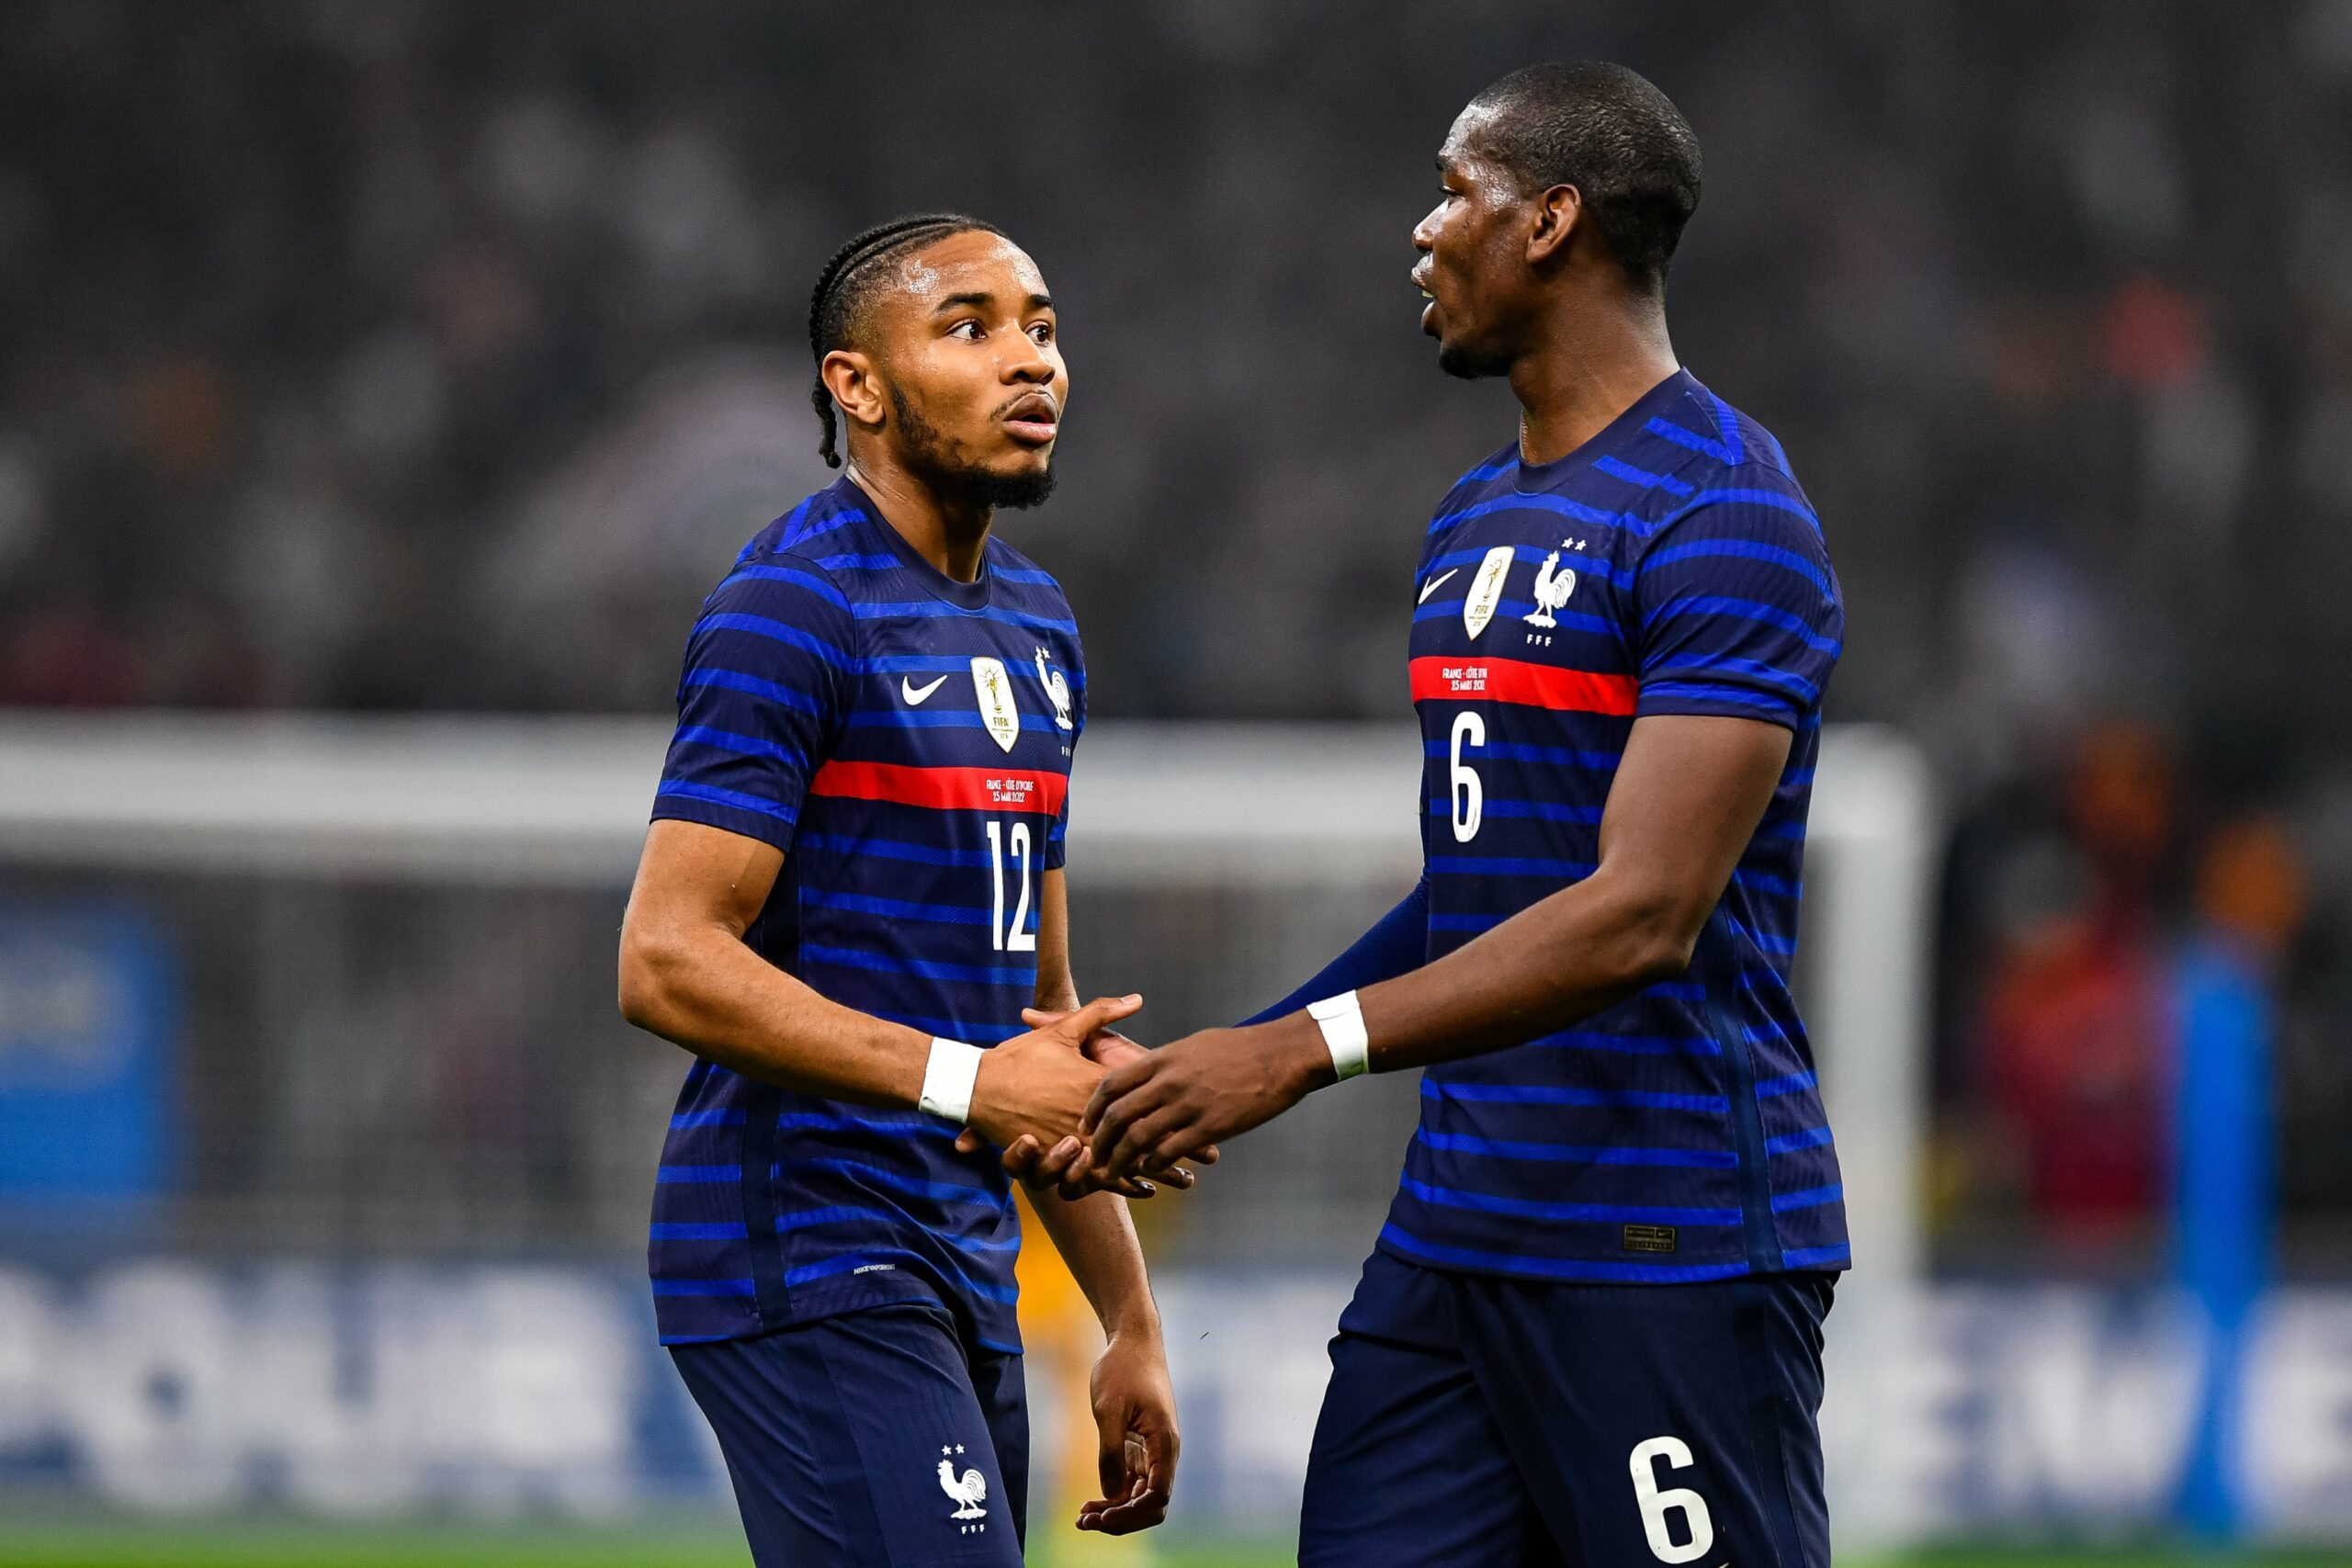 Veja os gols de França x Costa do Marfim: no sufoco, seleção francesa vence os marfinenses por 2 x 1